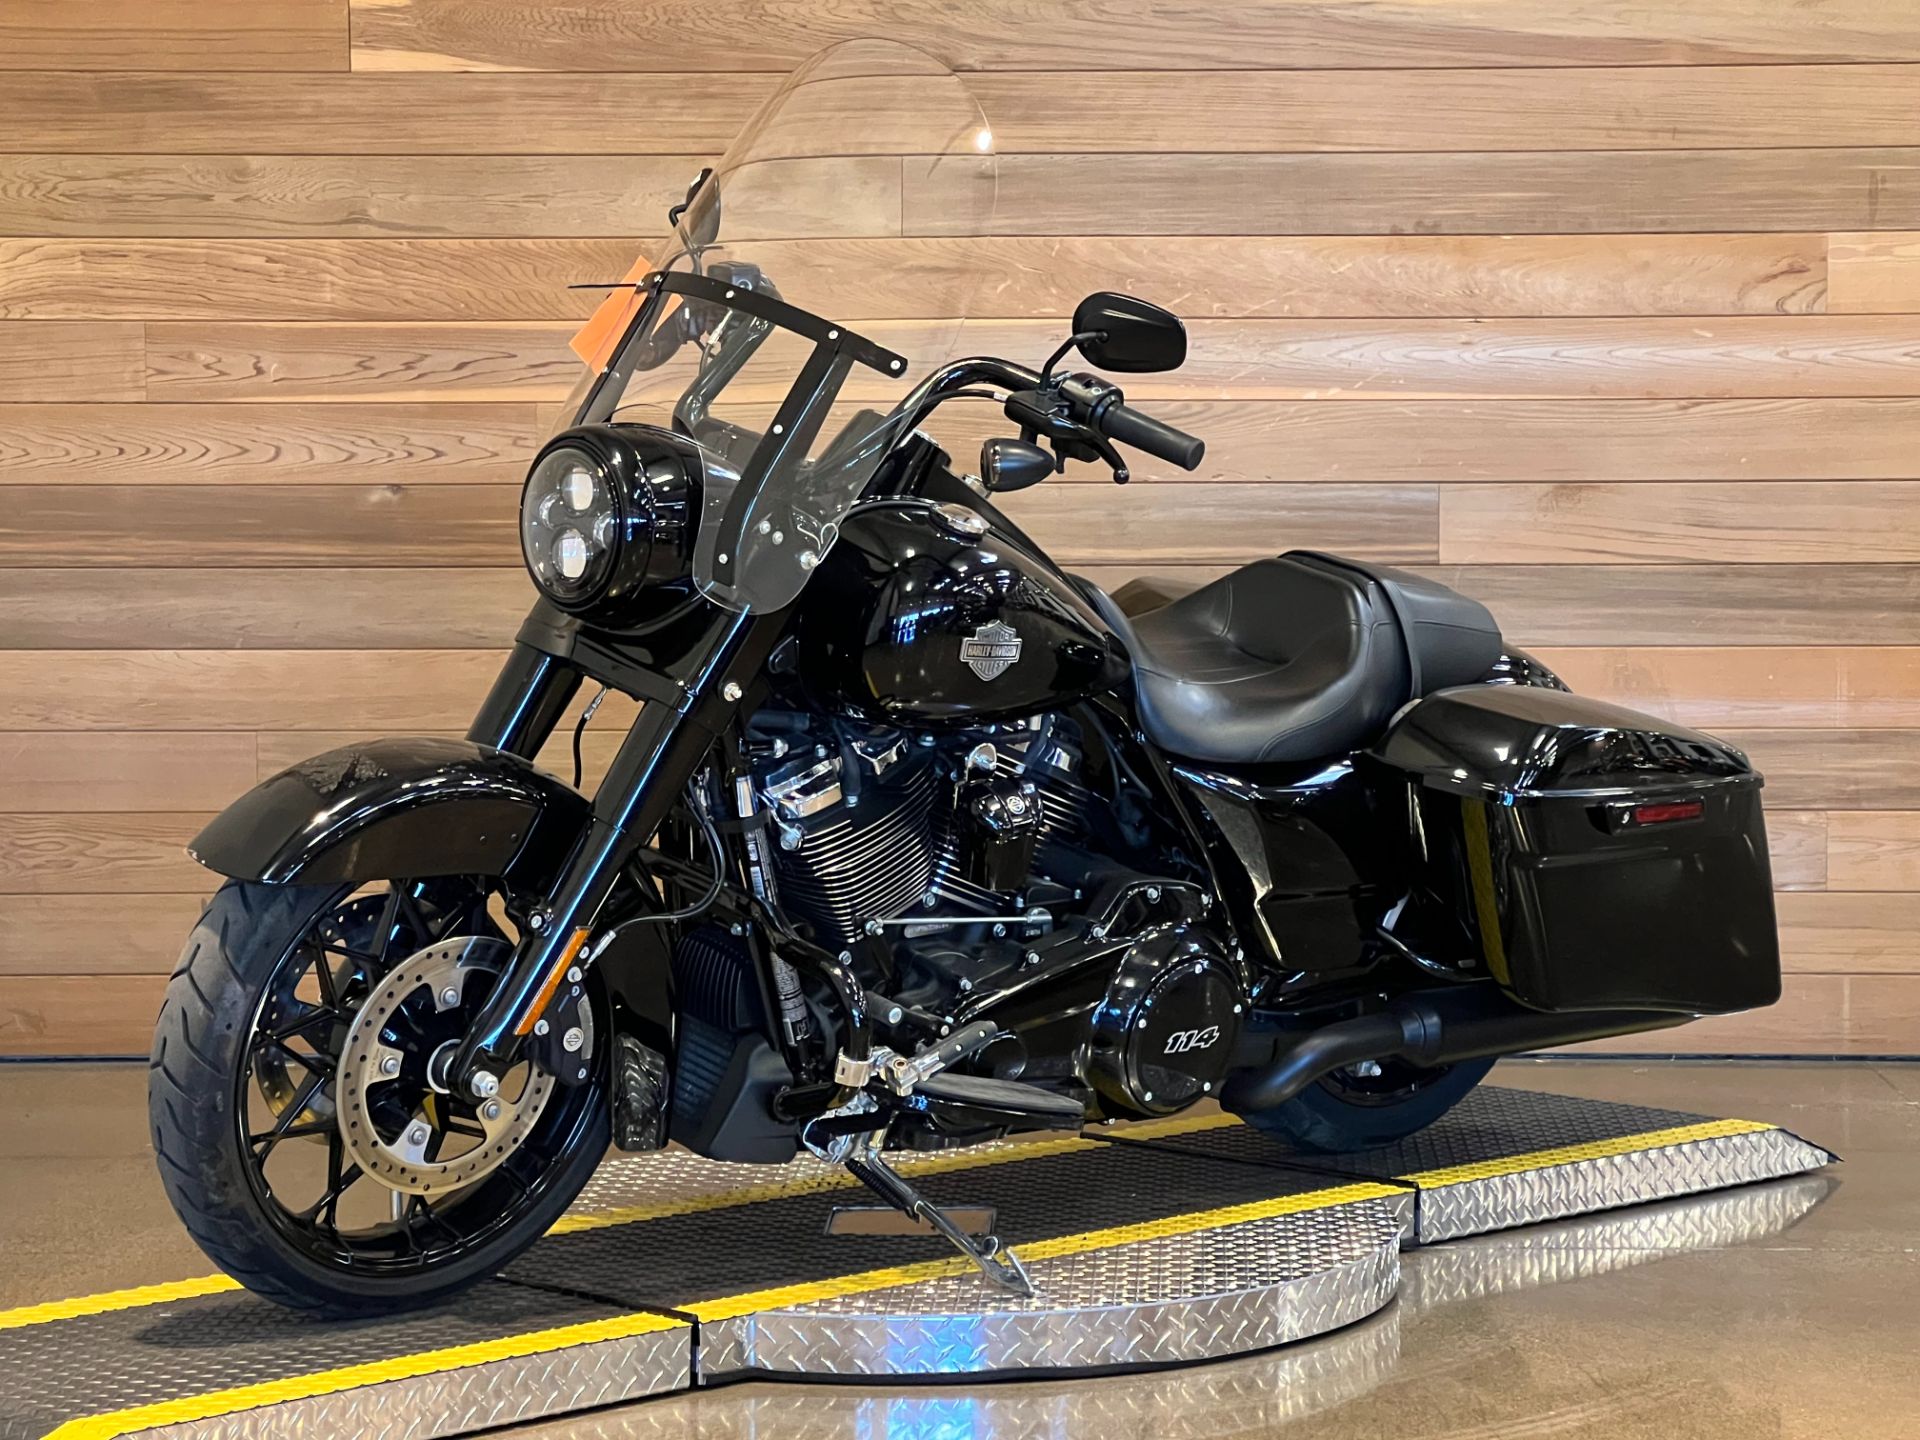 2021 Harley-Davidson Road King® Special in Salem, Oregon - Photo 4